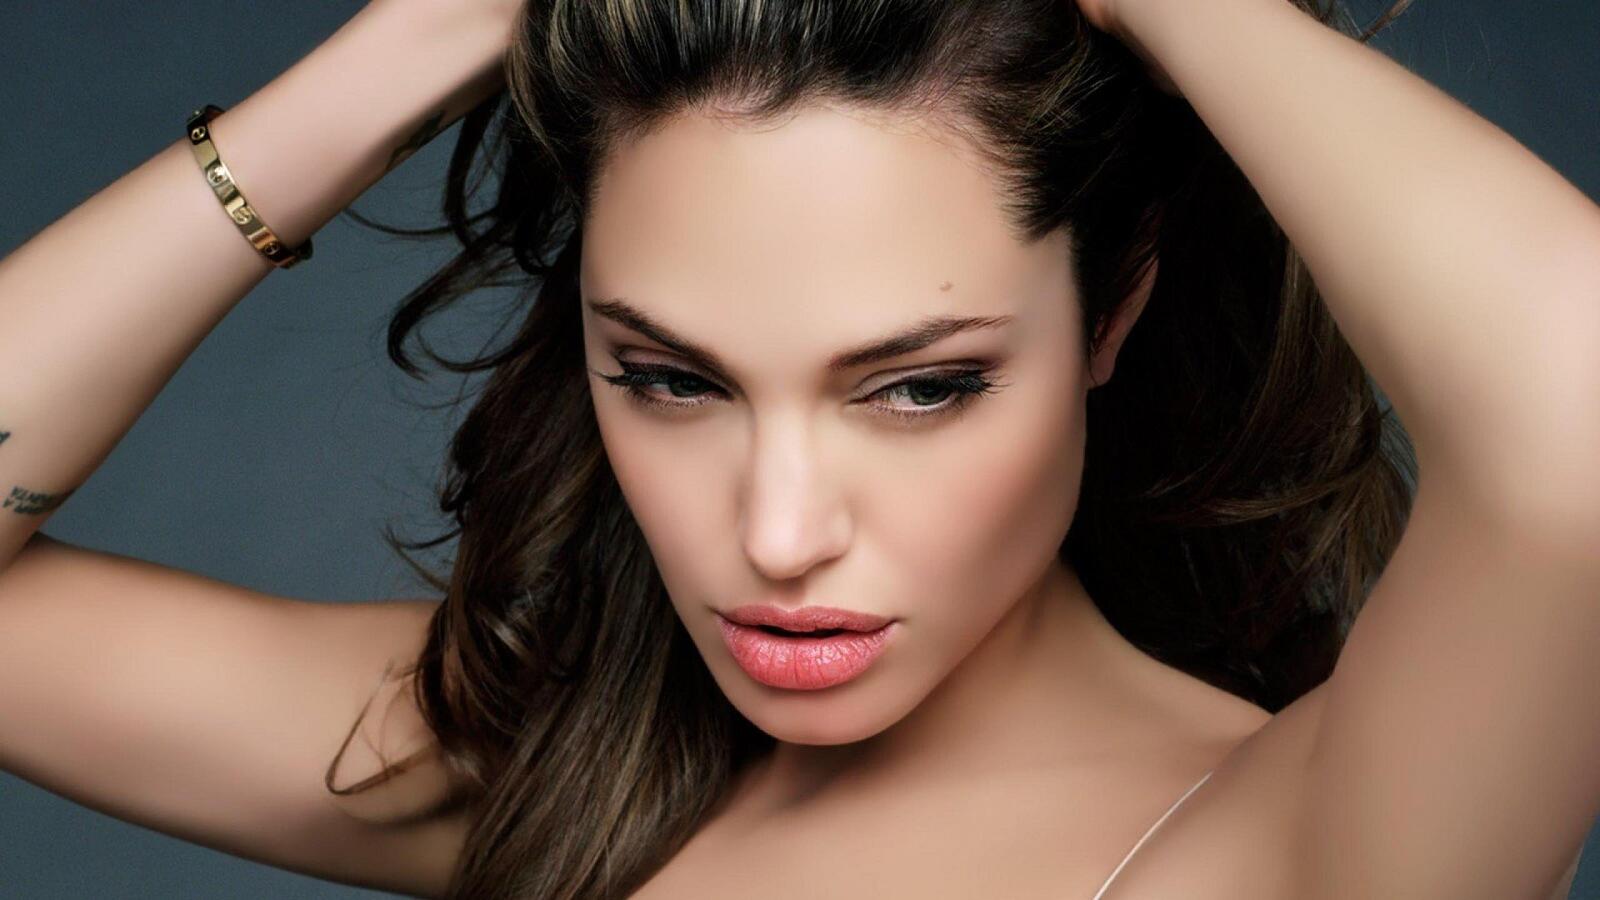 Wallpapers Angelina Jolie celebrities photoshoot on the desktop